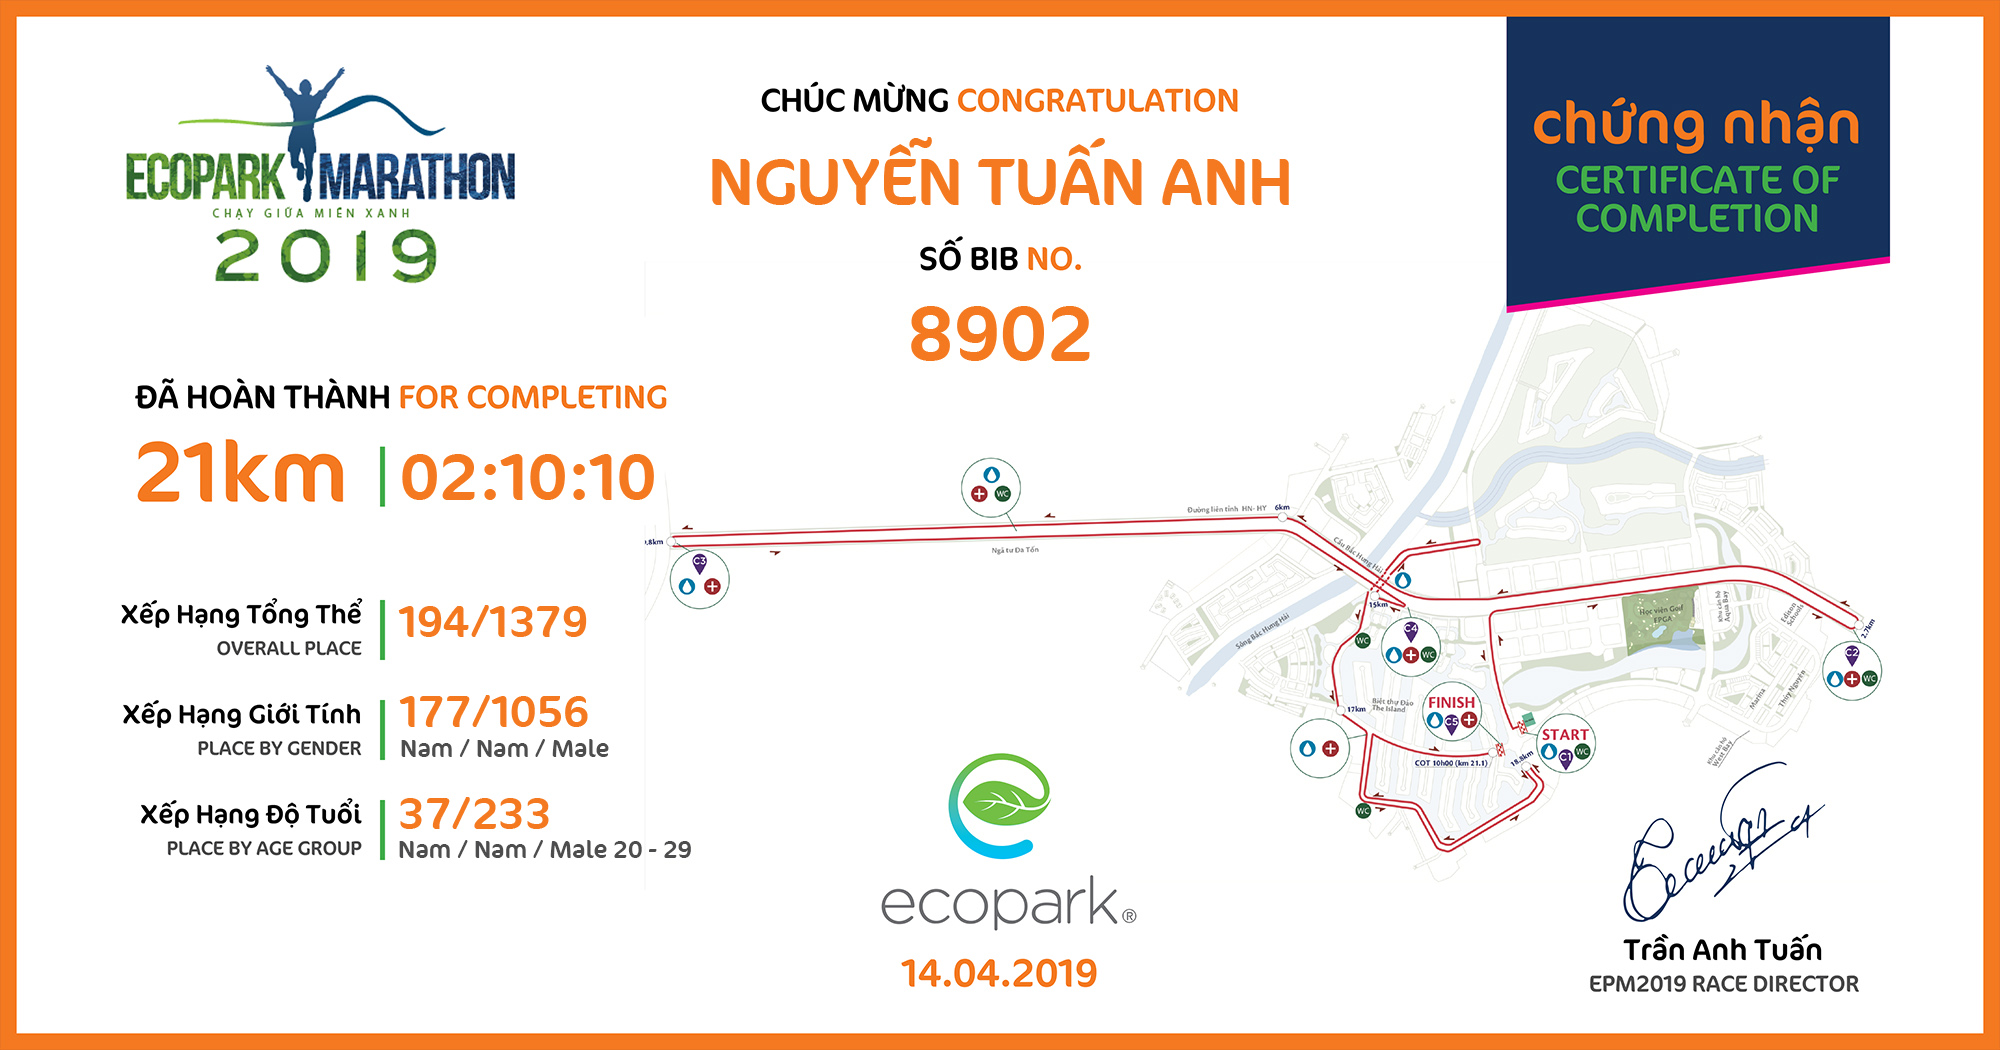 8902 - Nguyễn Tuấn Anh